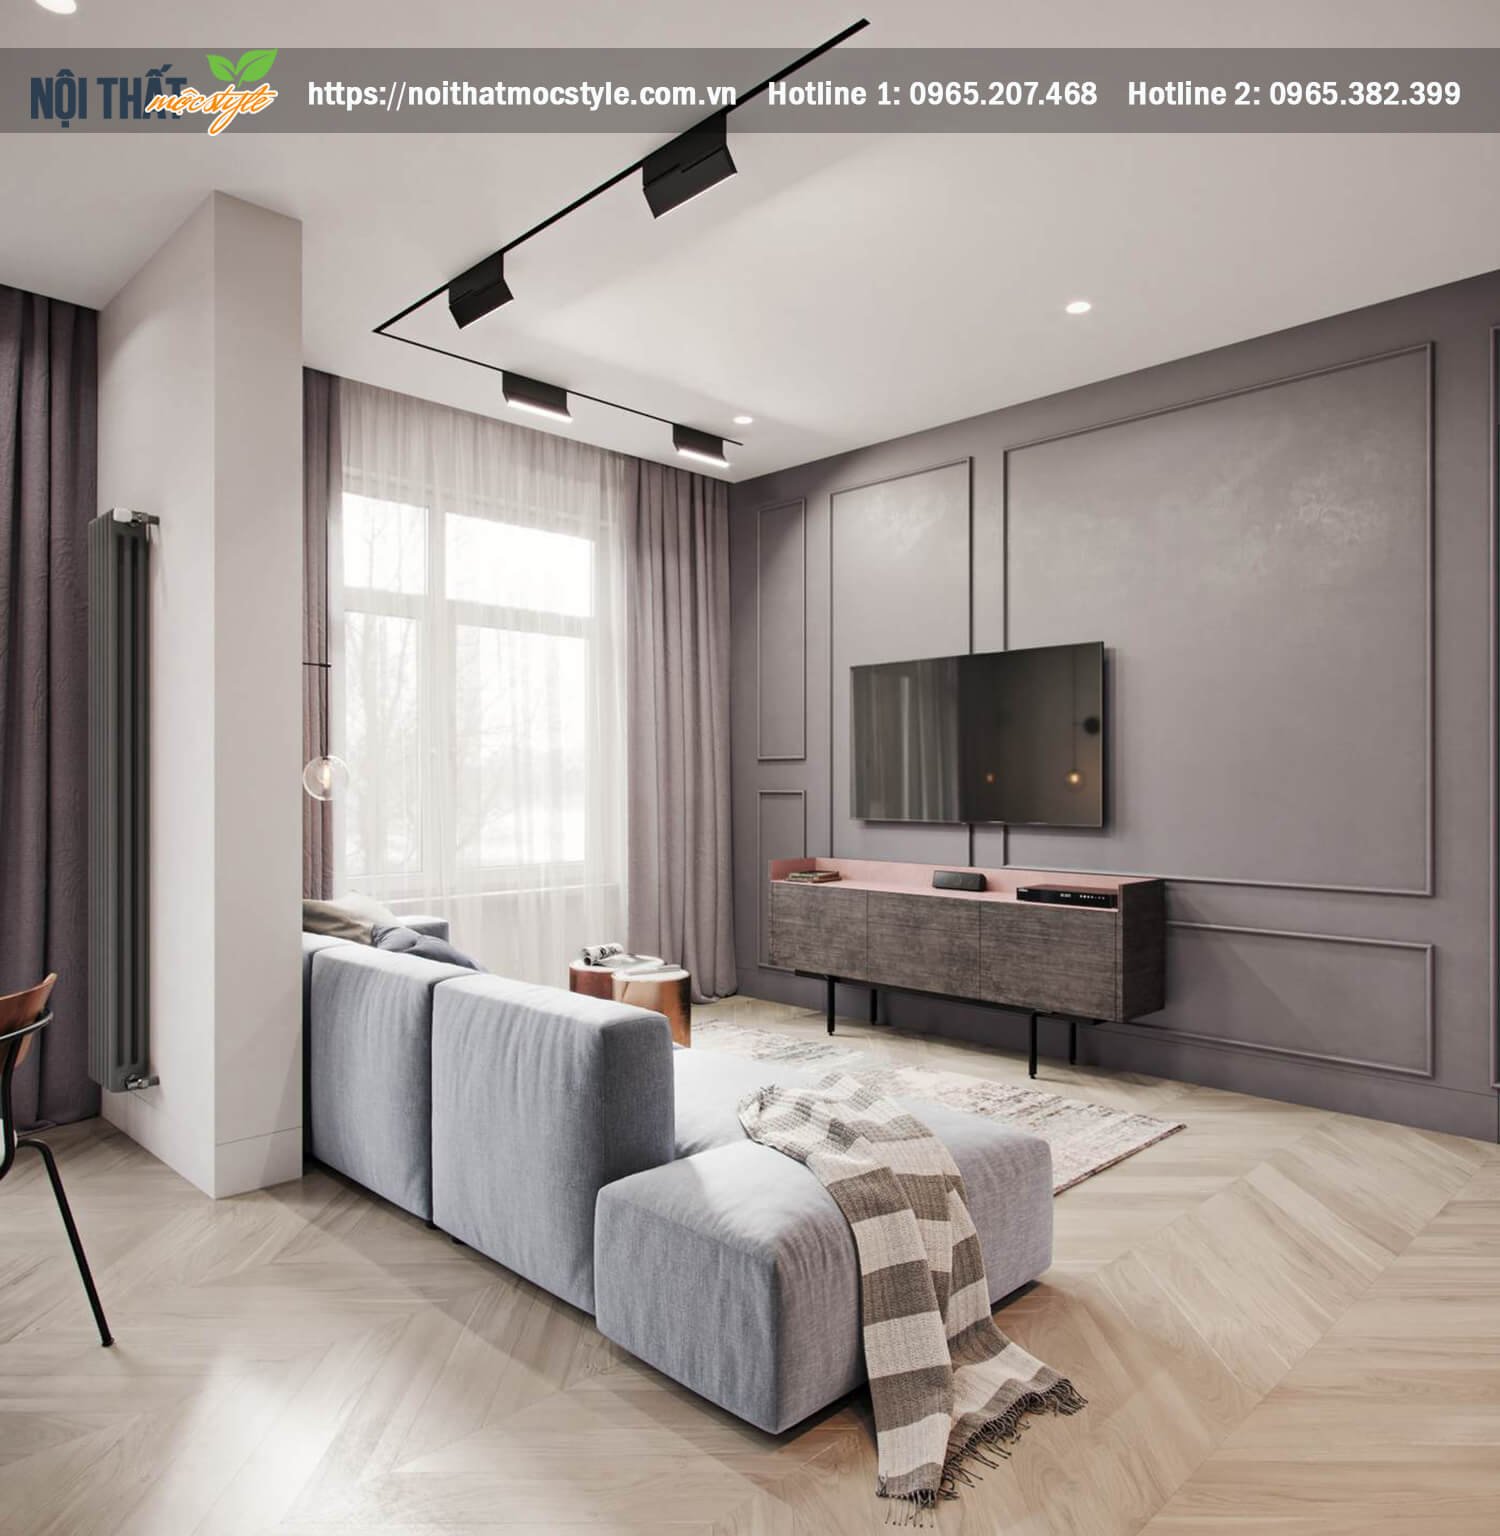 Không gian phòng khách thiết kế theo phong cách hiện đại lối bày trí nội thất đơn giản và tinh tế